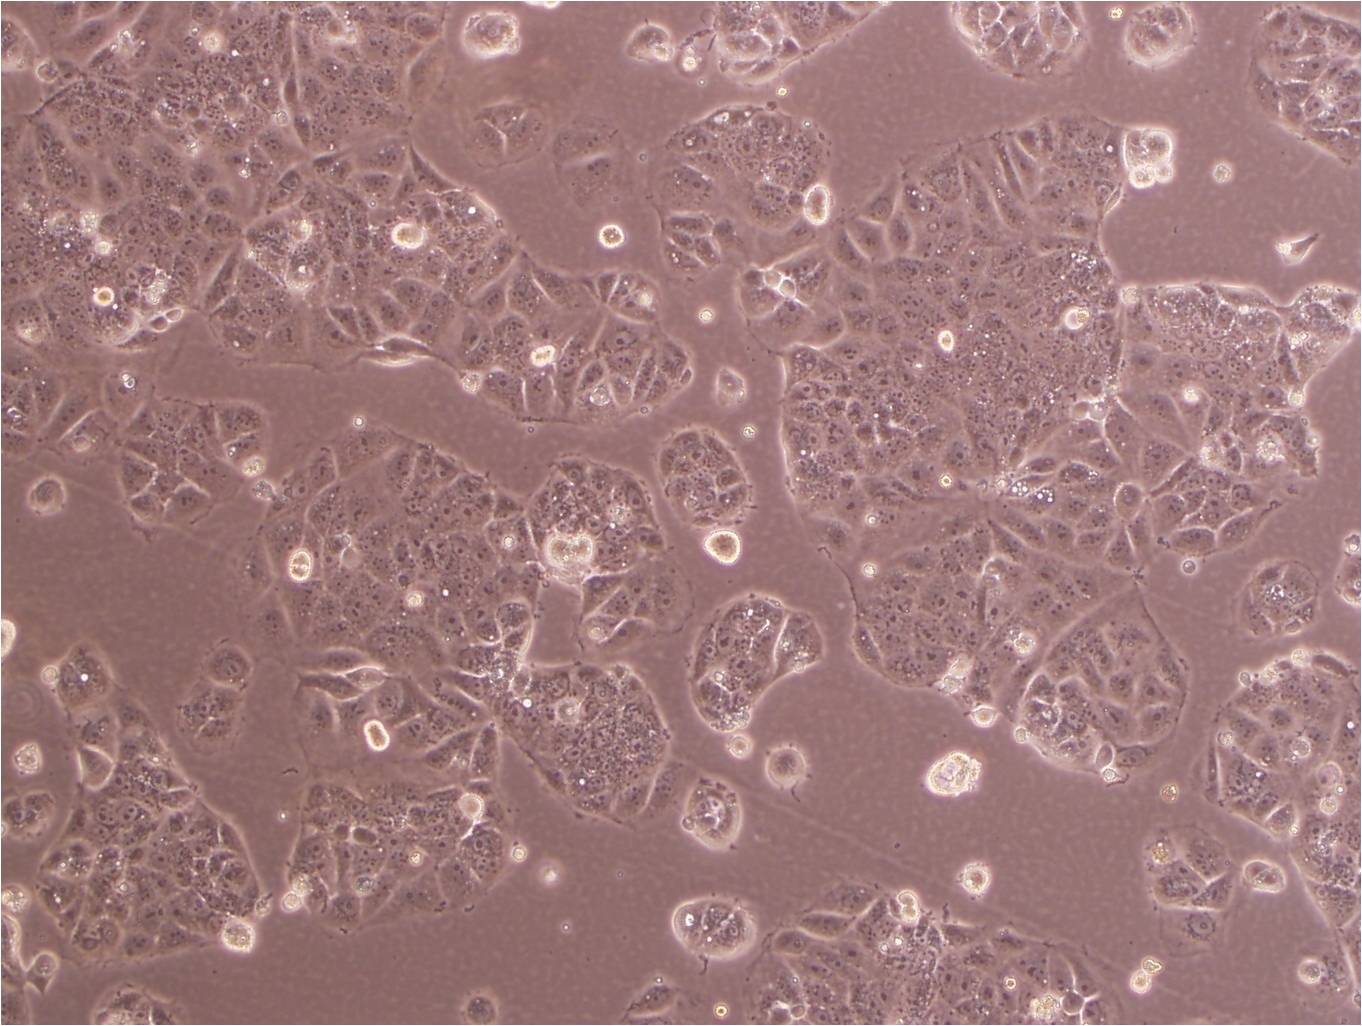 KP-4 cell line人胰腺导管细胞癌细胞系,KP-4 cell line